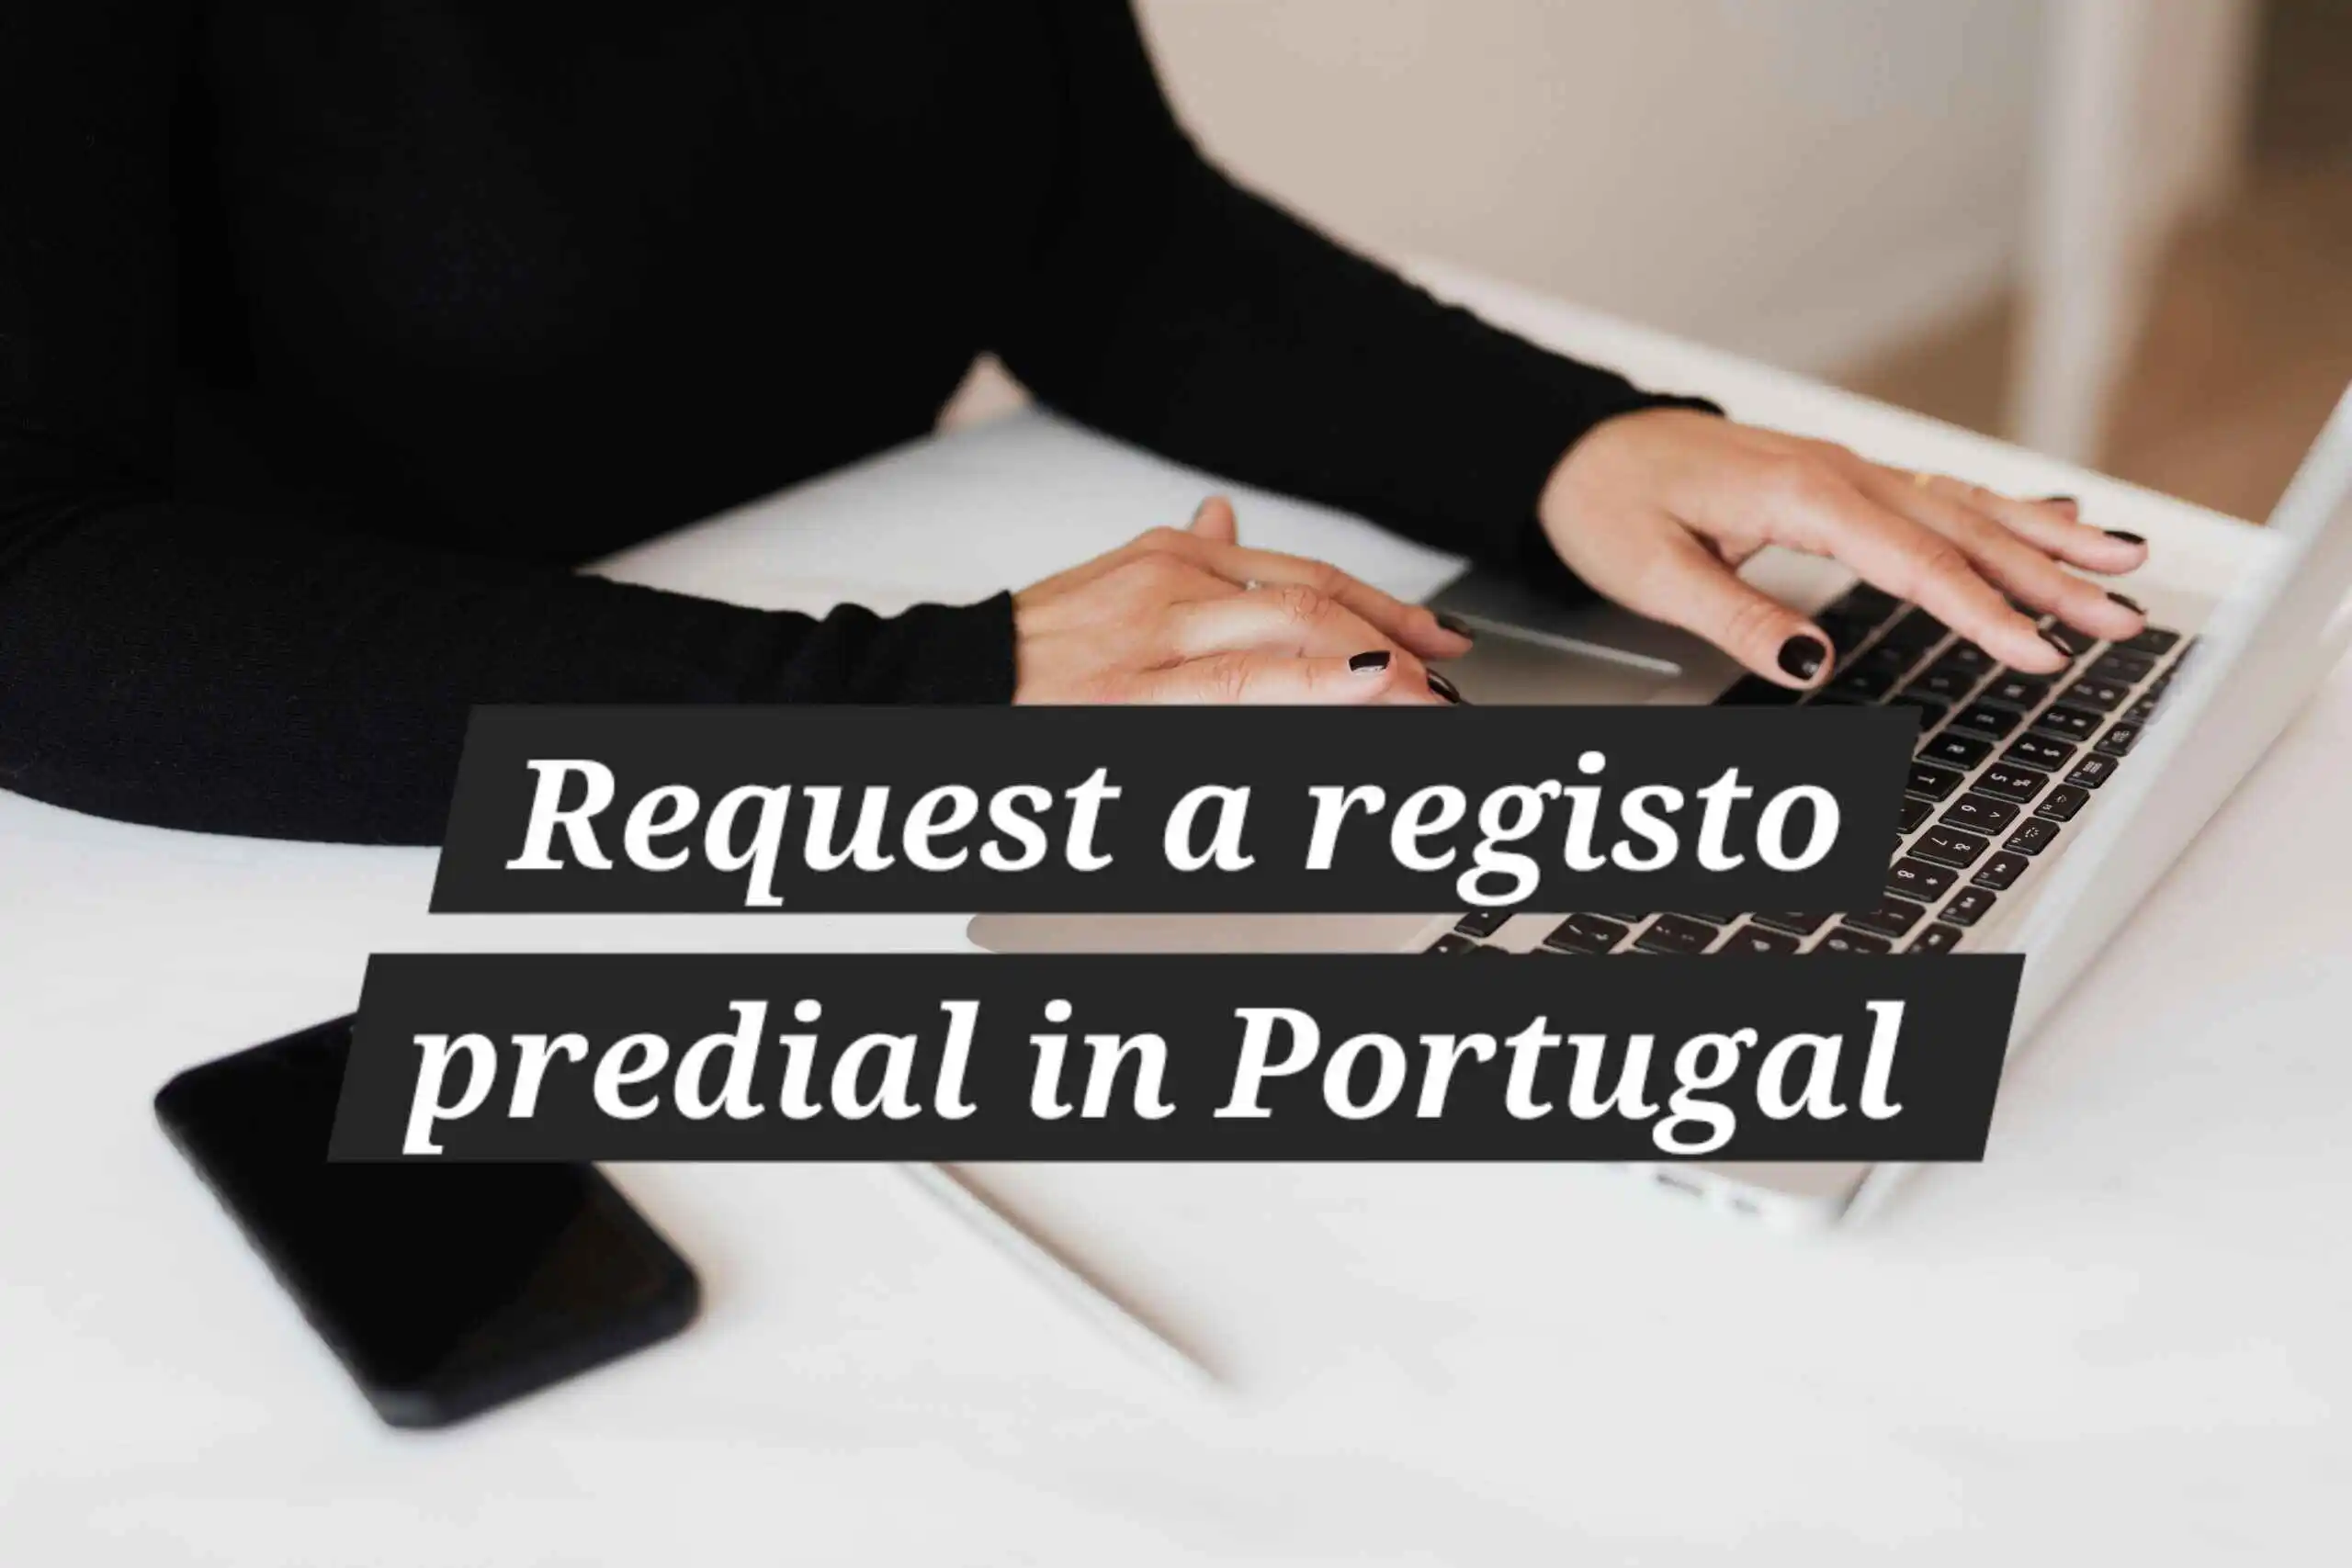 request-registo-predial-in-portugal